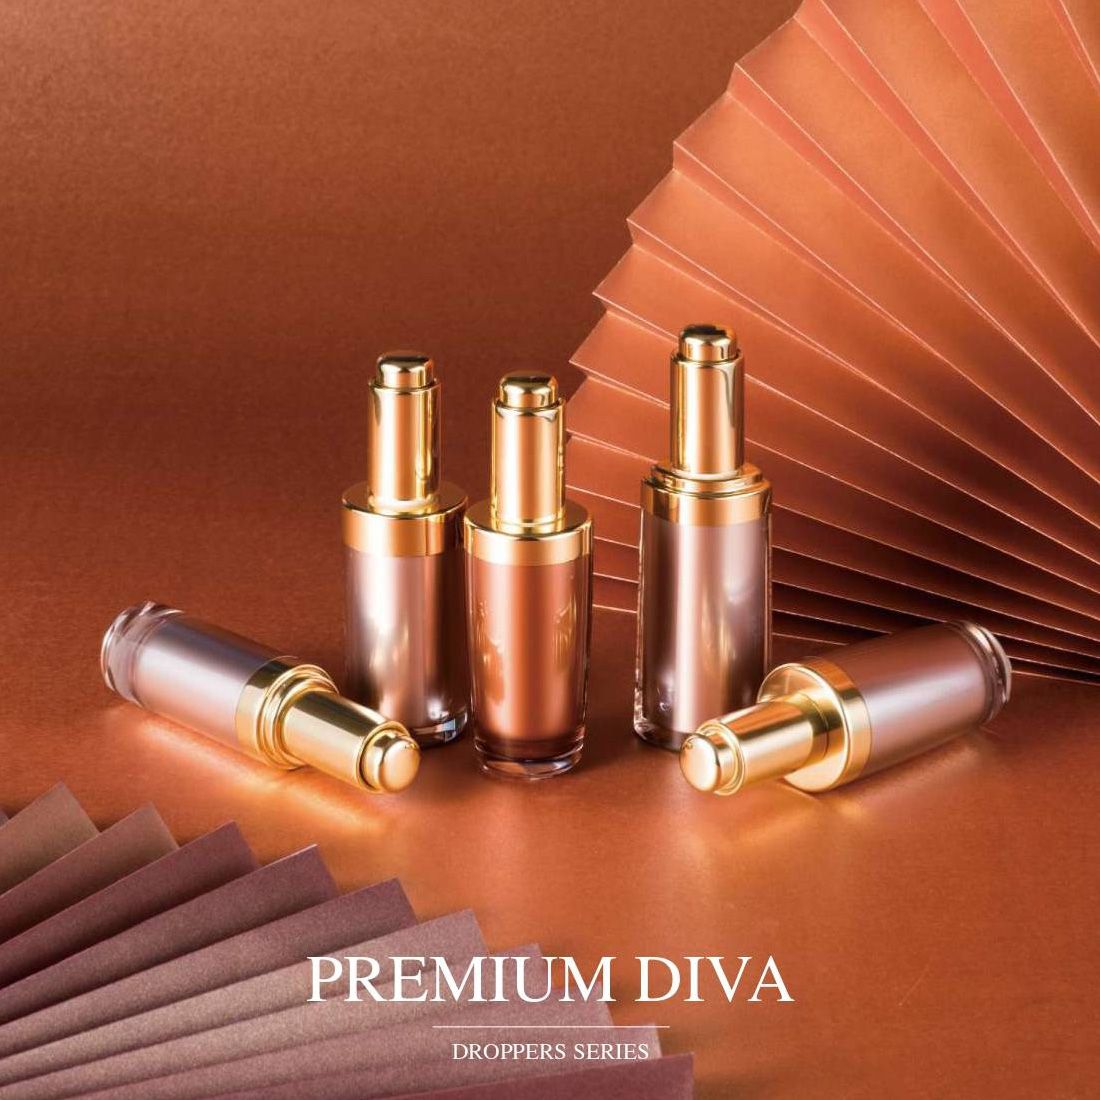 Premium Diva (قطارة مستحضرات التجميل الأكريليكية الفاخرة لتغليف مستحضرات التجميل والعناية بالبشرة) - سلسلة القطرات